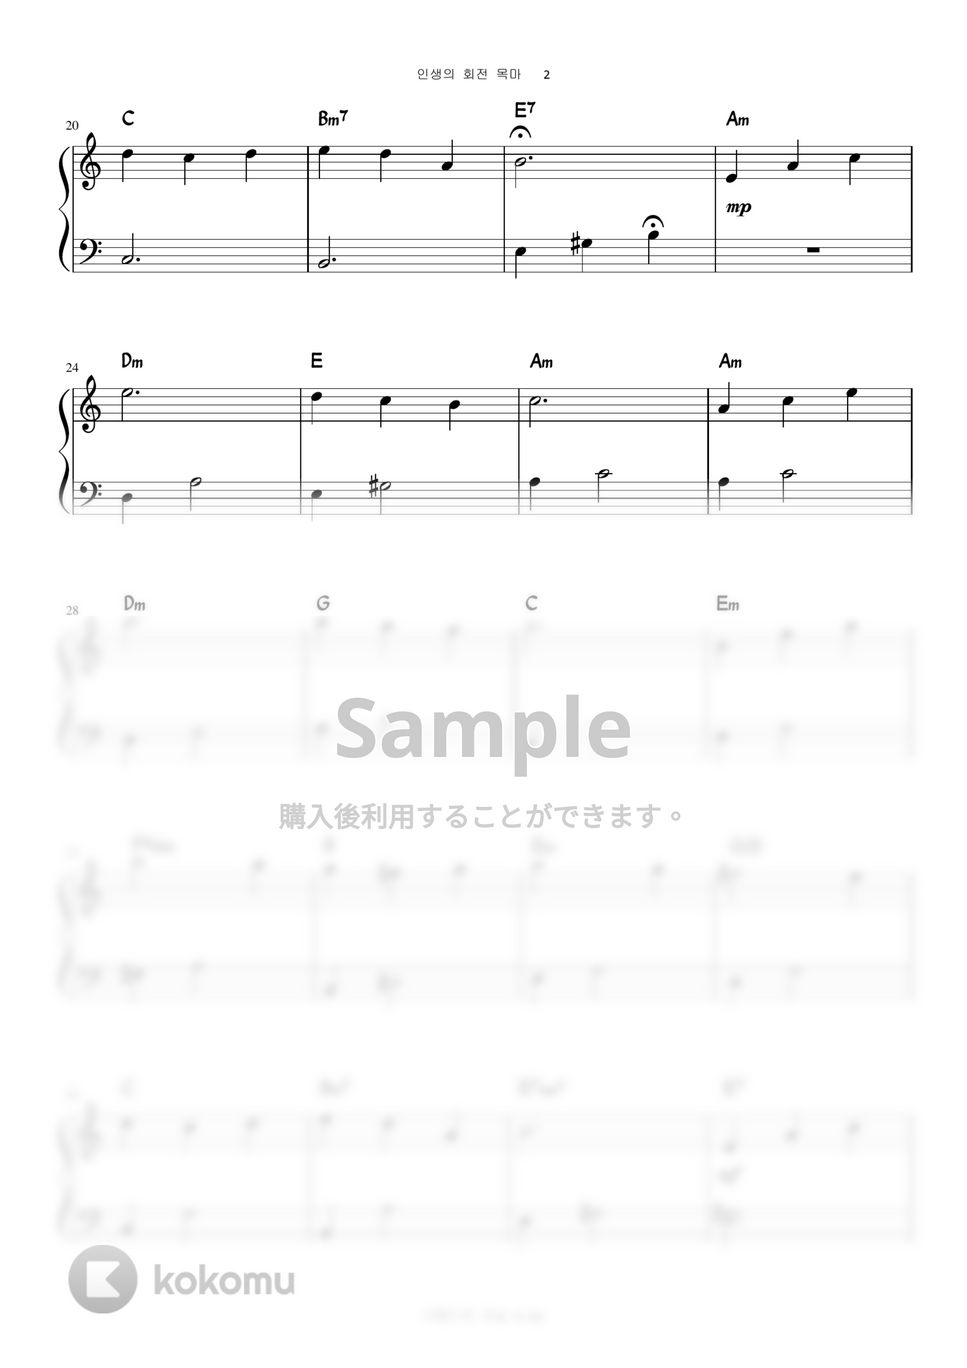 ハウルの動く城 - 人生のメリーゴーランド (Level 1 - Very Easy Version) by A.Ha